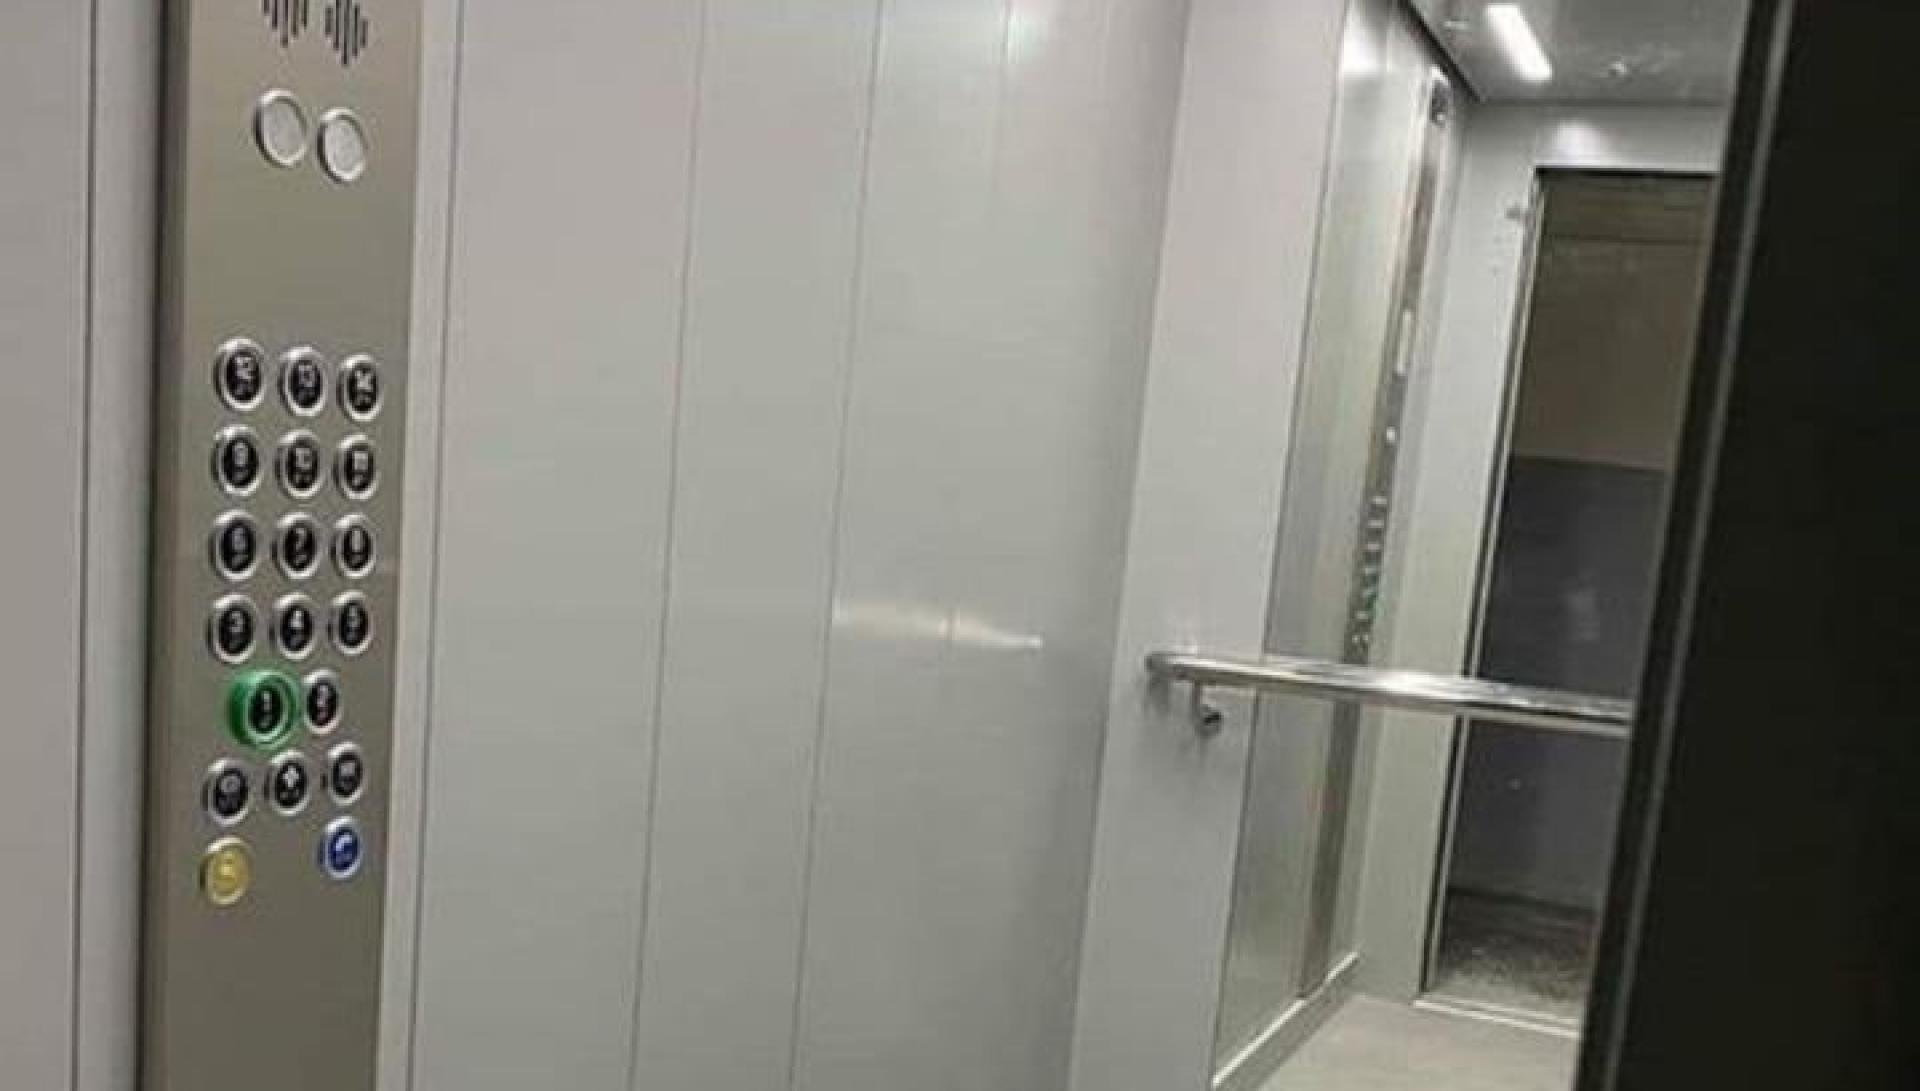 Երևանի բազմաբնակարան շենքերում կտեղադրվեն 100 նոր վերելակներ. Ավինյան